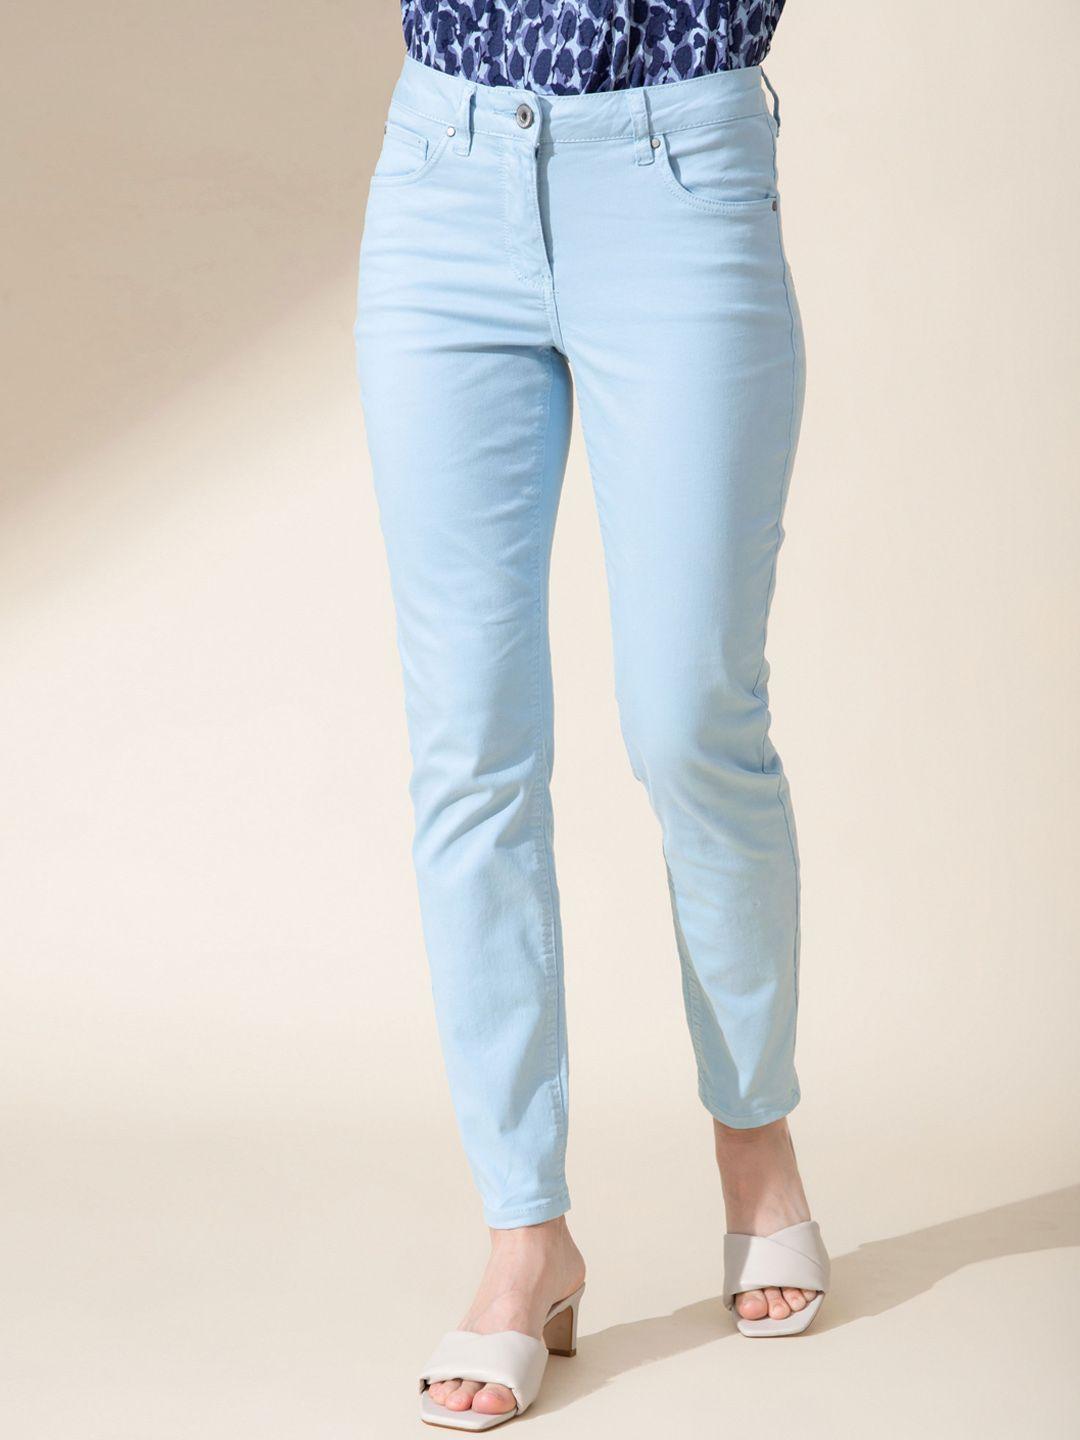 b.copenhagen women turquoise blue slim fit trousers